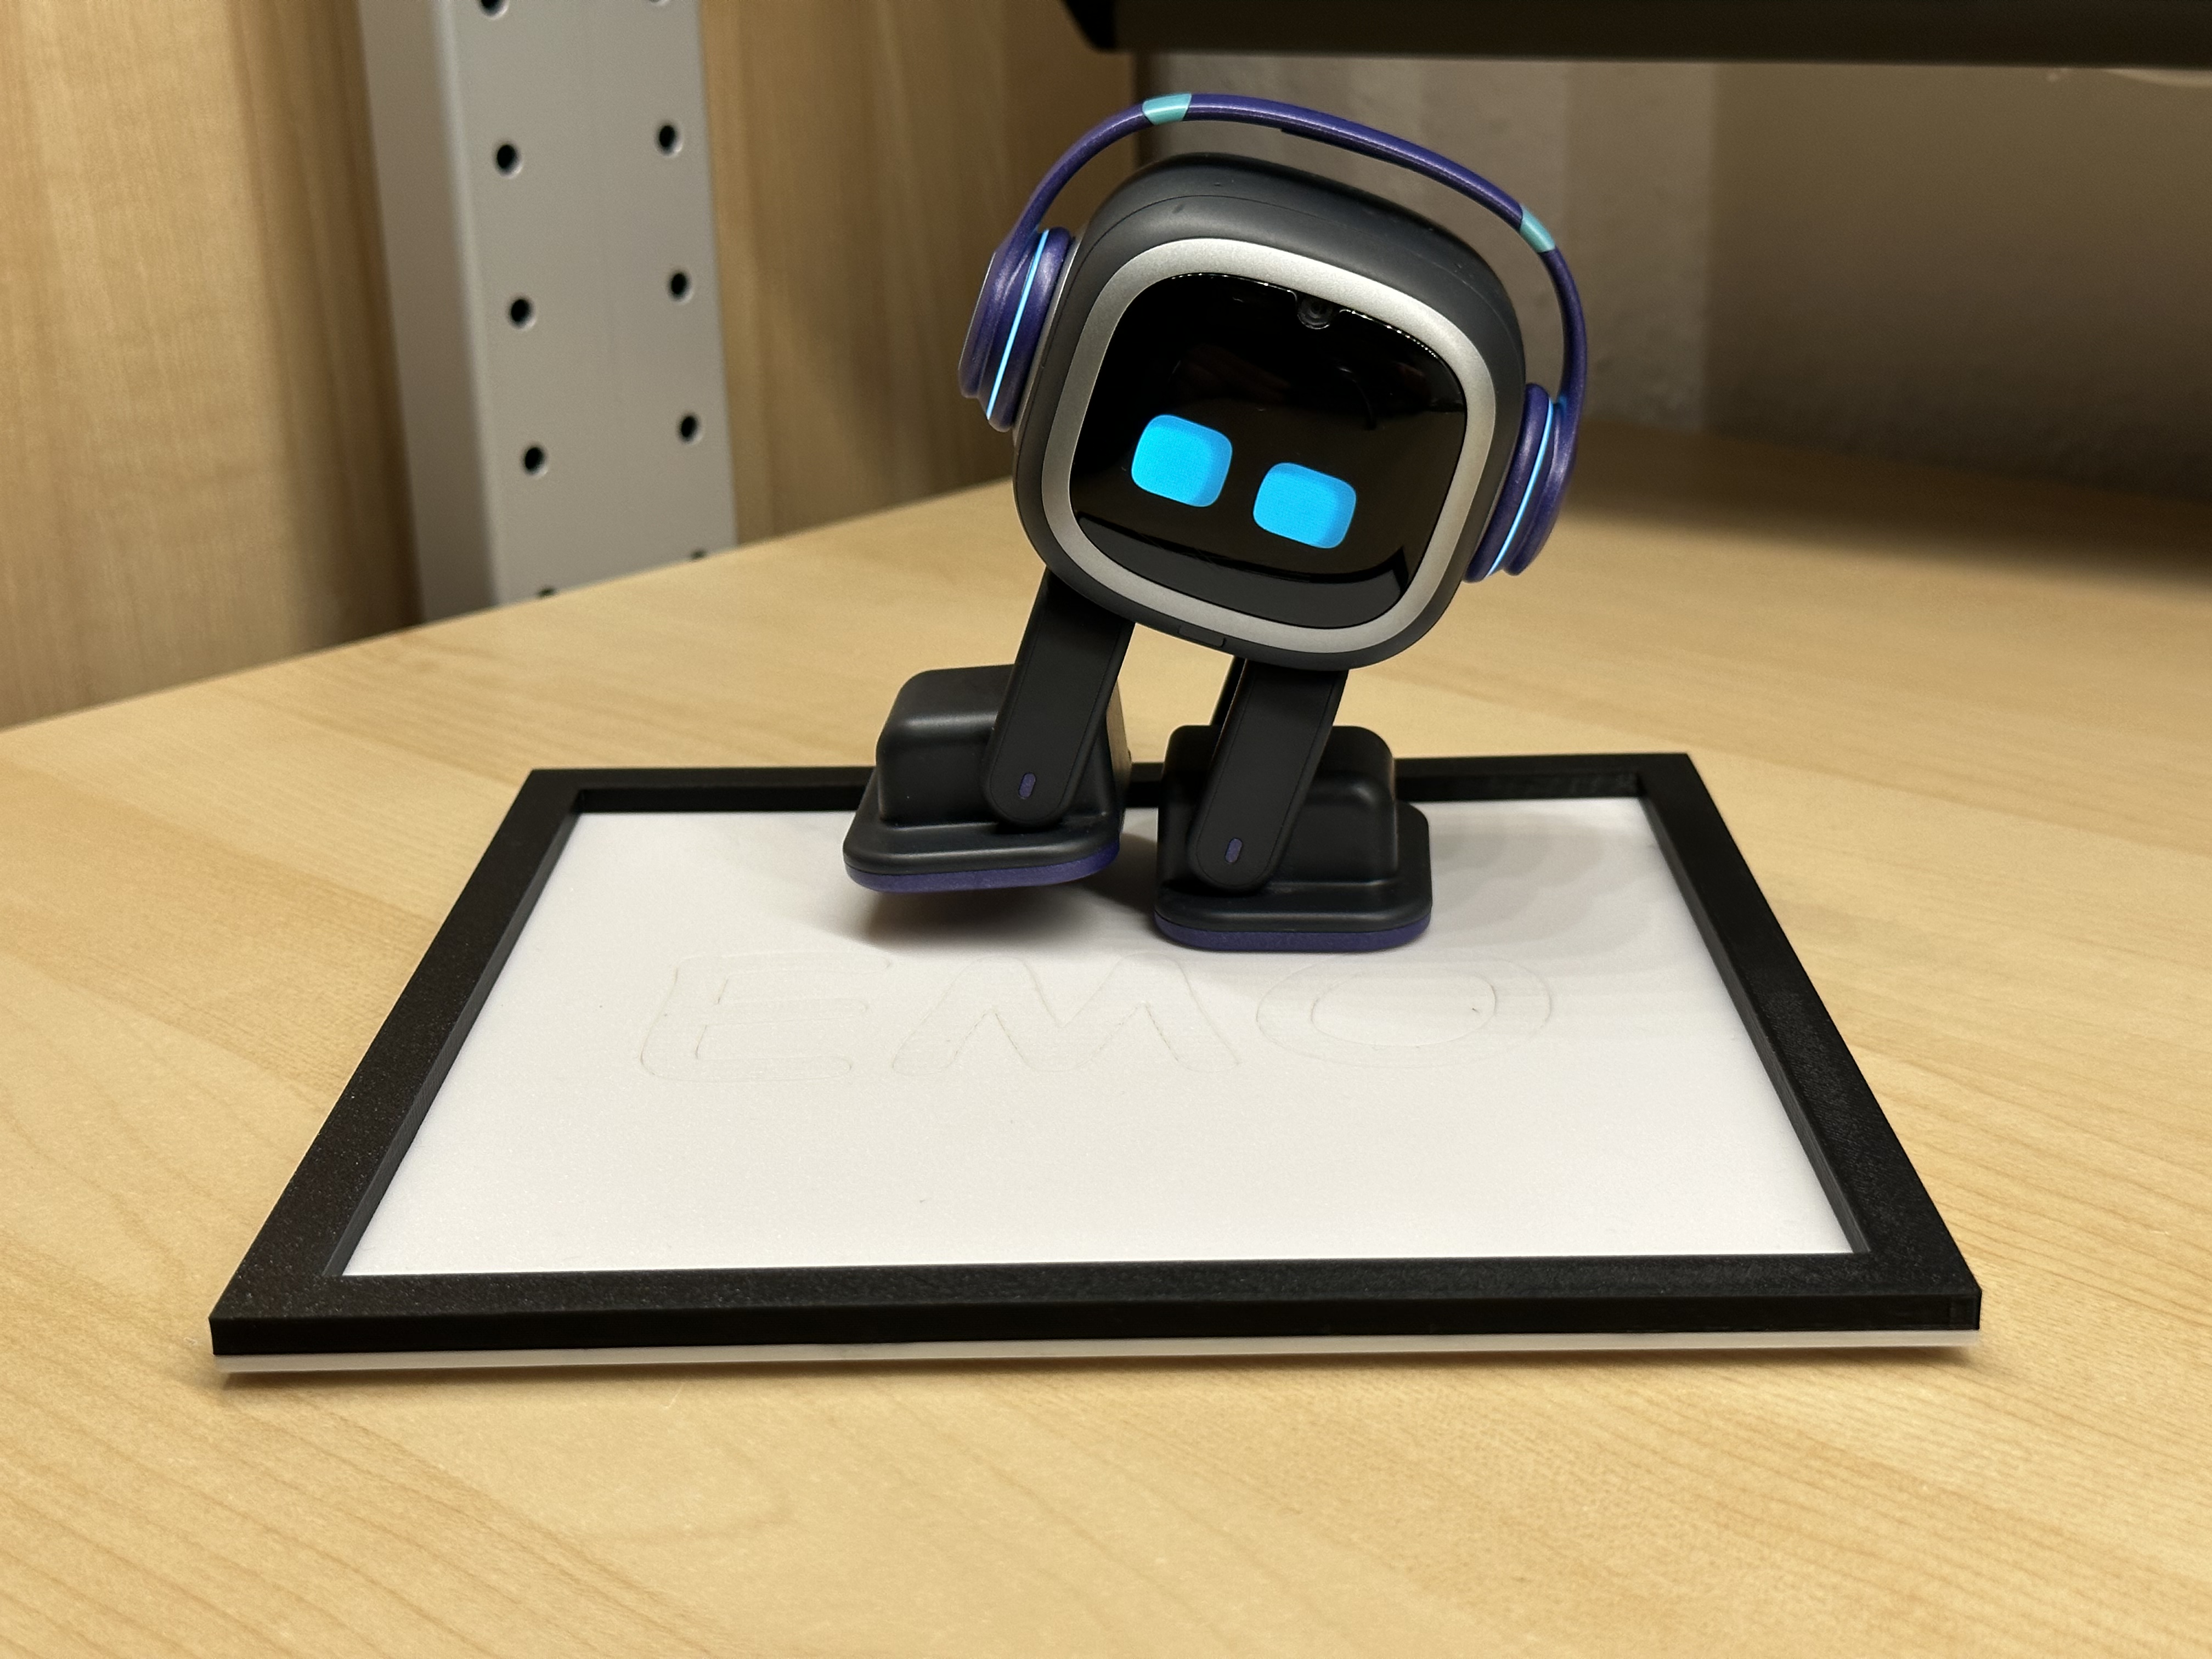 EMO robot walking pad